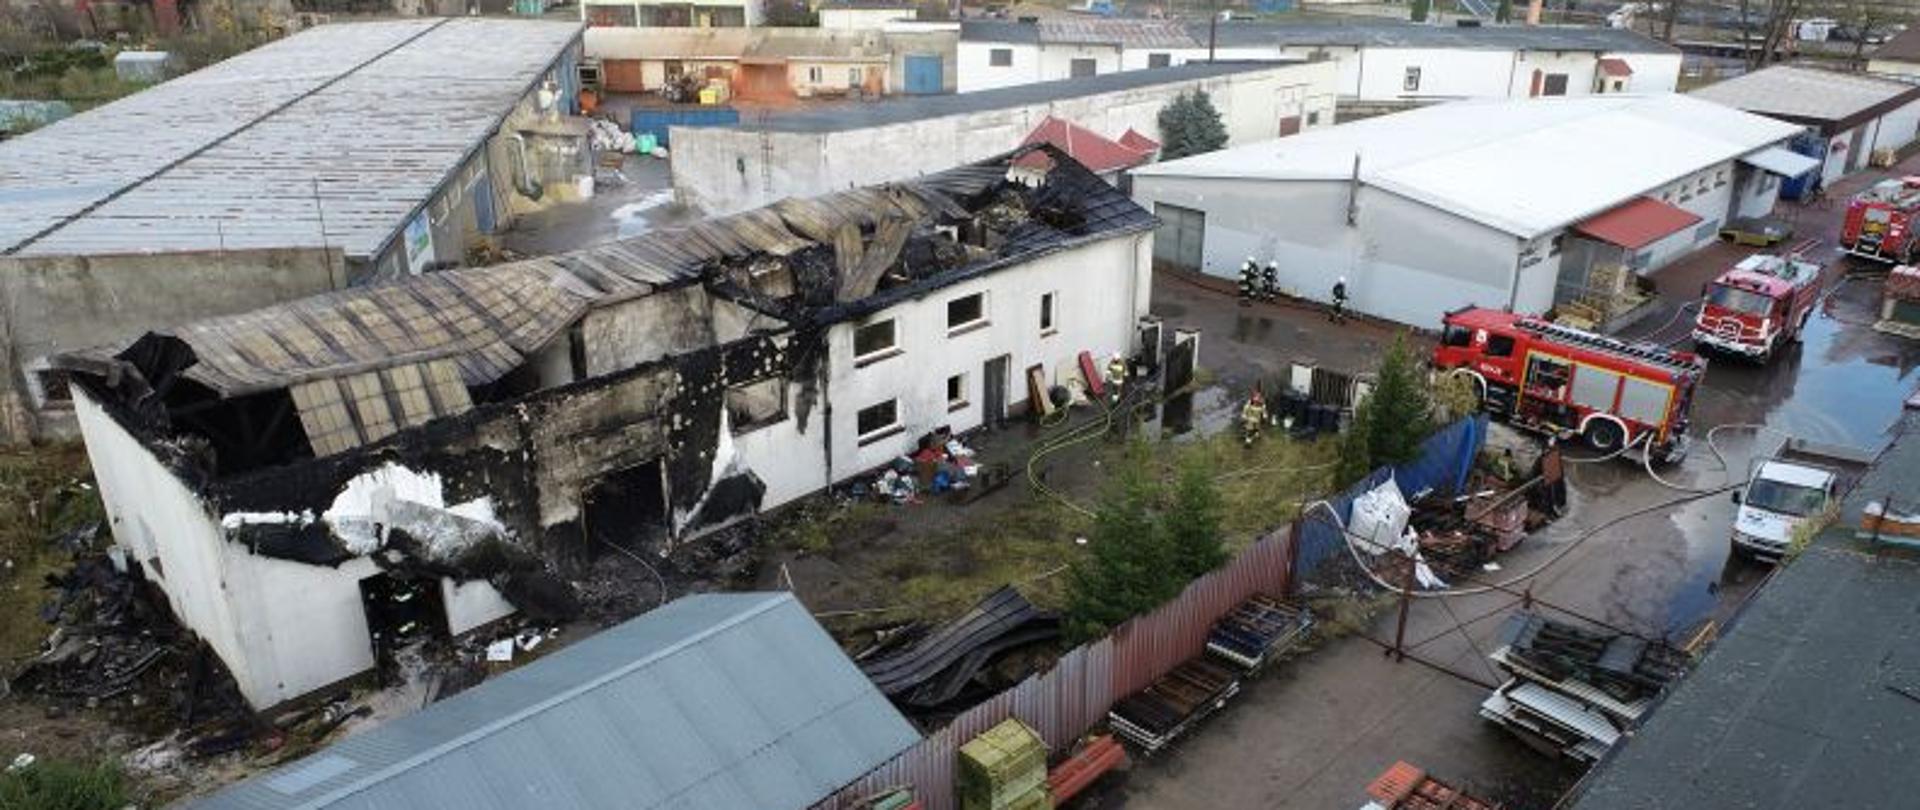 Zdjęcie wykonane z drona. W centralnej części uszkodzony, biały budynek. Budynek po pożarze. Mam spalony i zapadnięty dach. Do około strażacy, wozy bojowe straży pożarnej i porozbijane węże